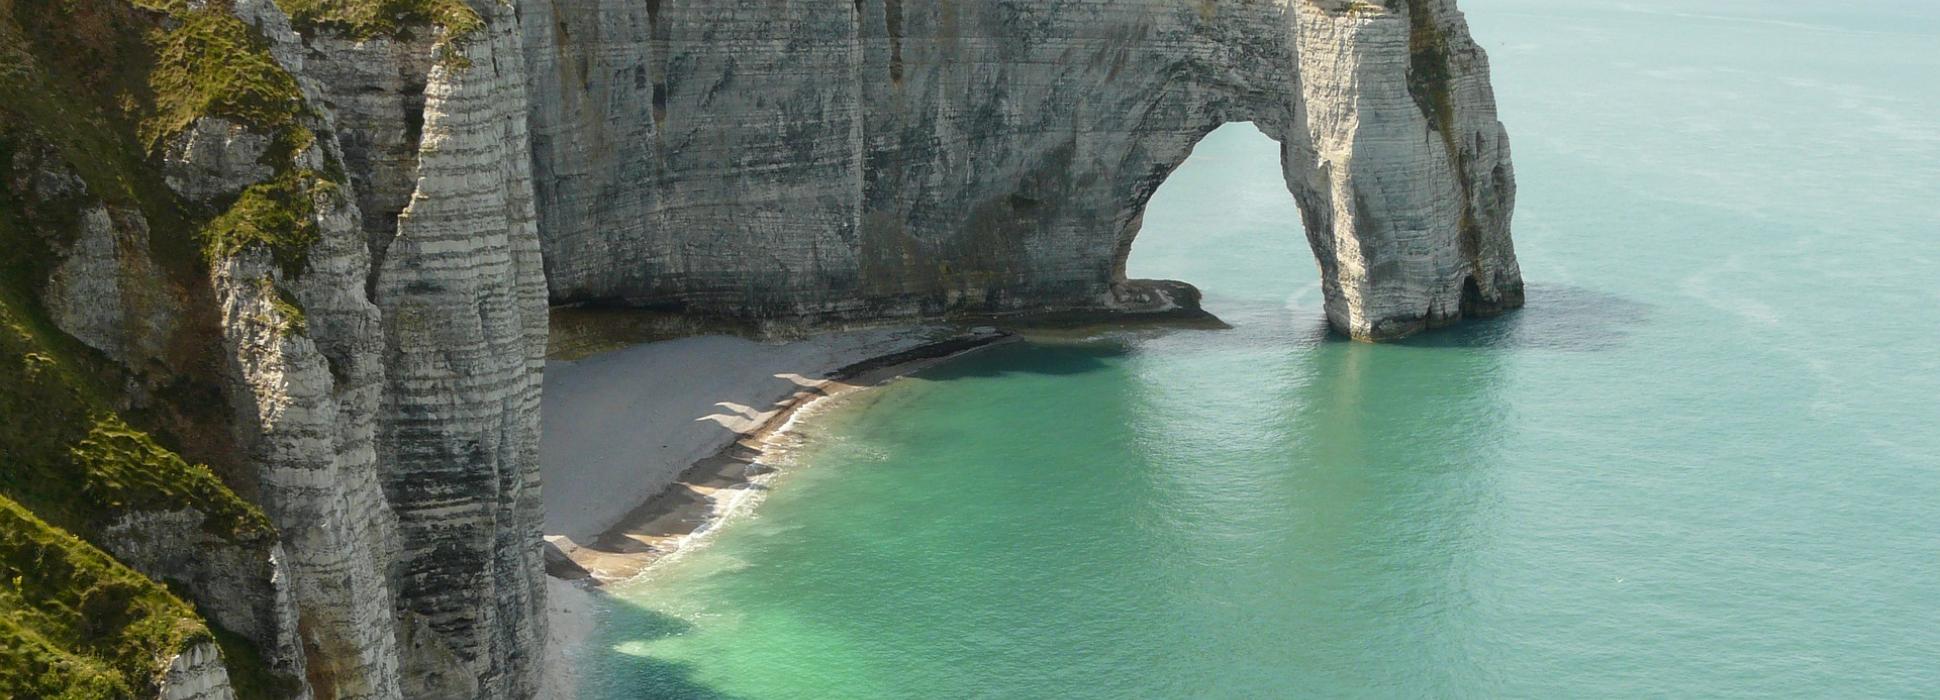 Lonely Planet pone Normandía en las 10 mejores regiones para visitar